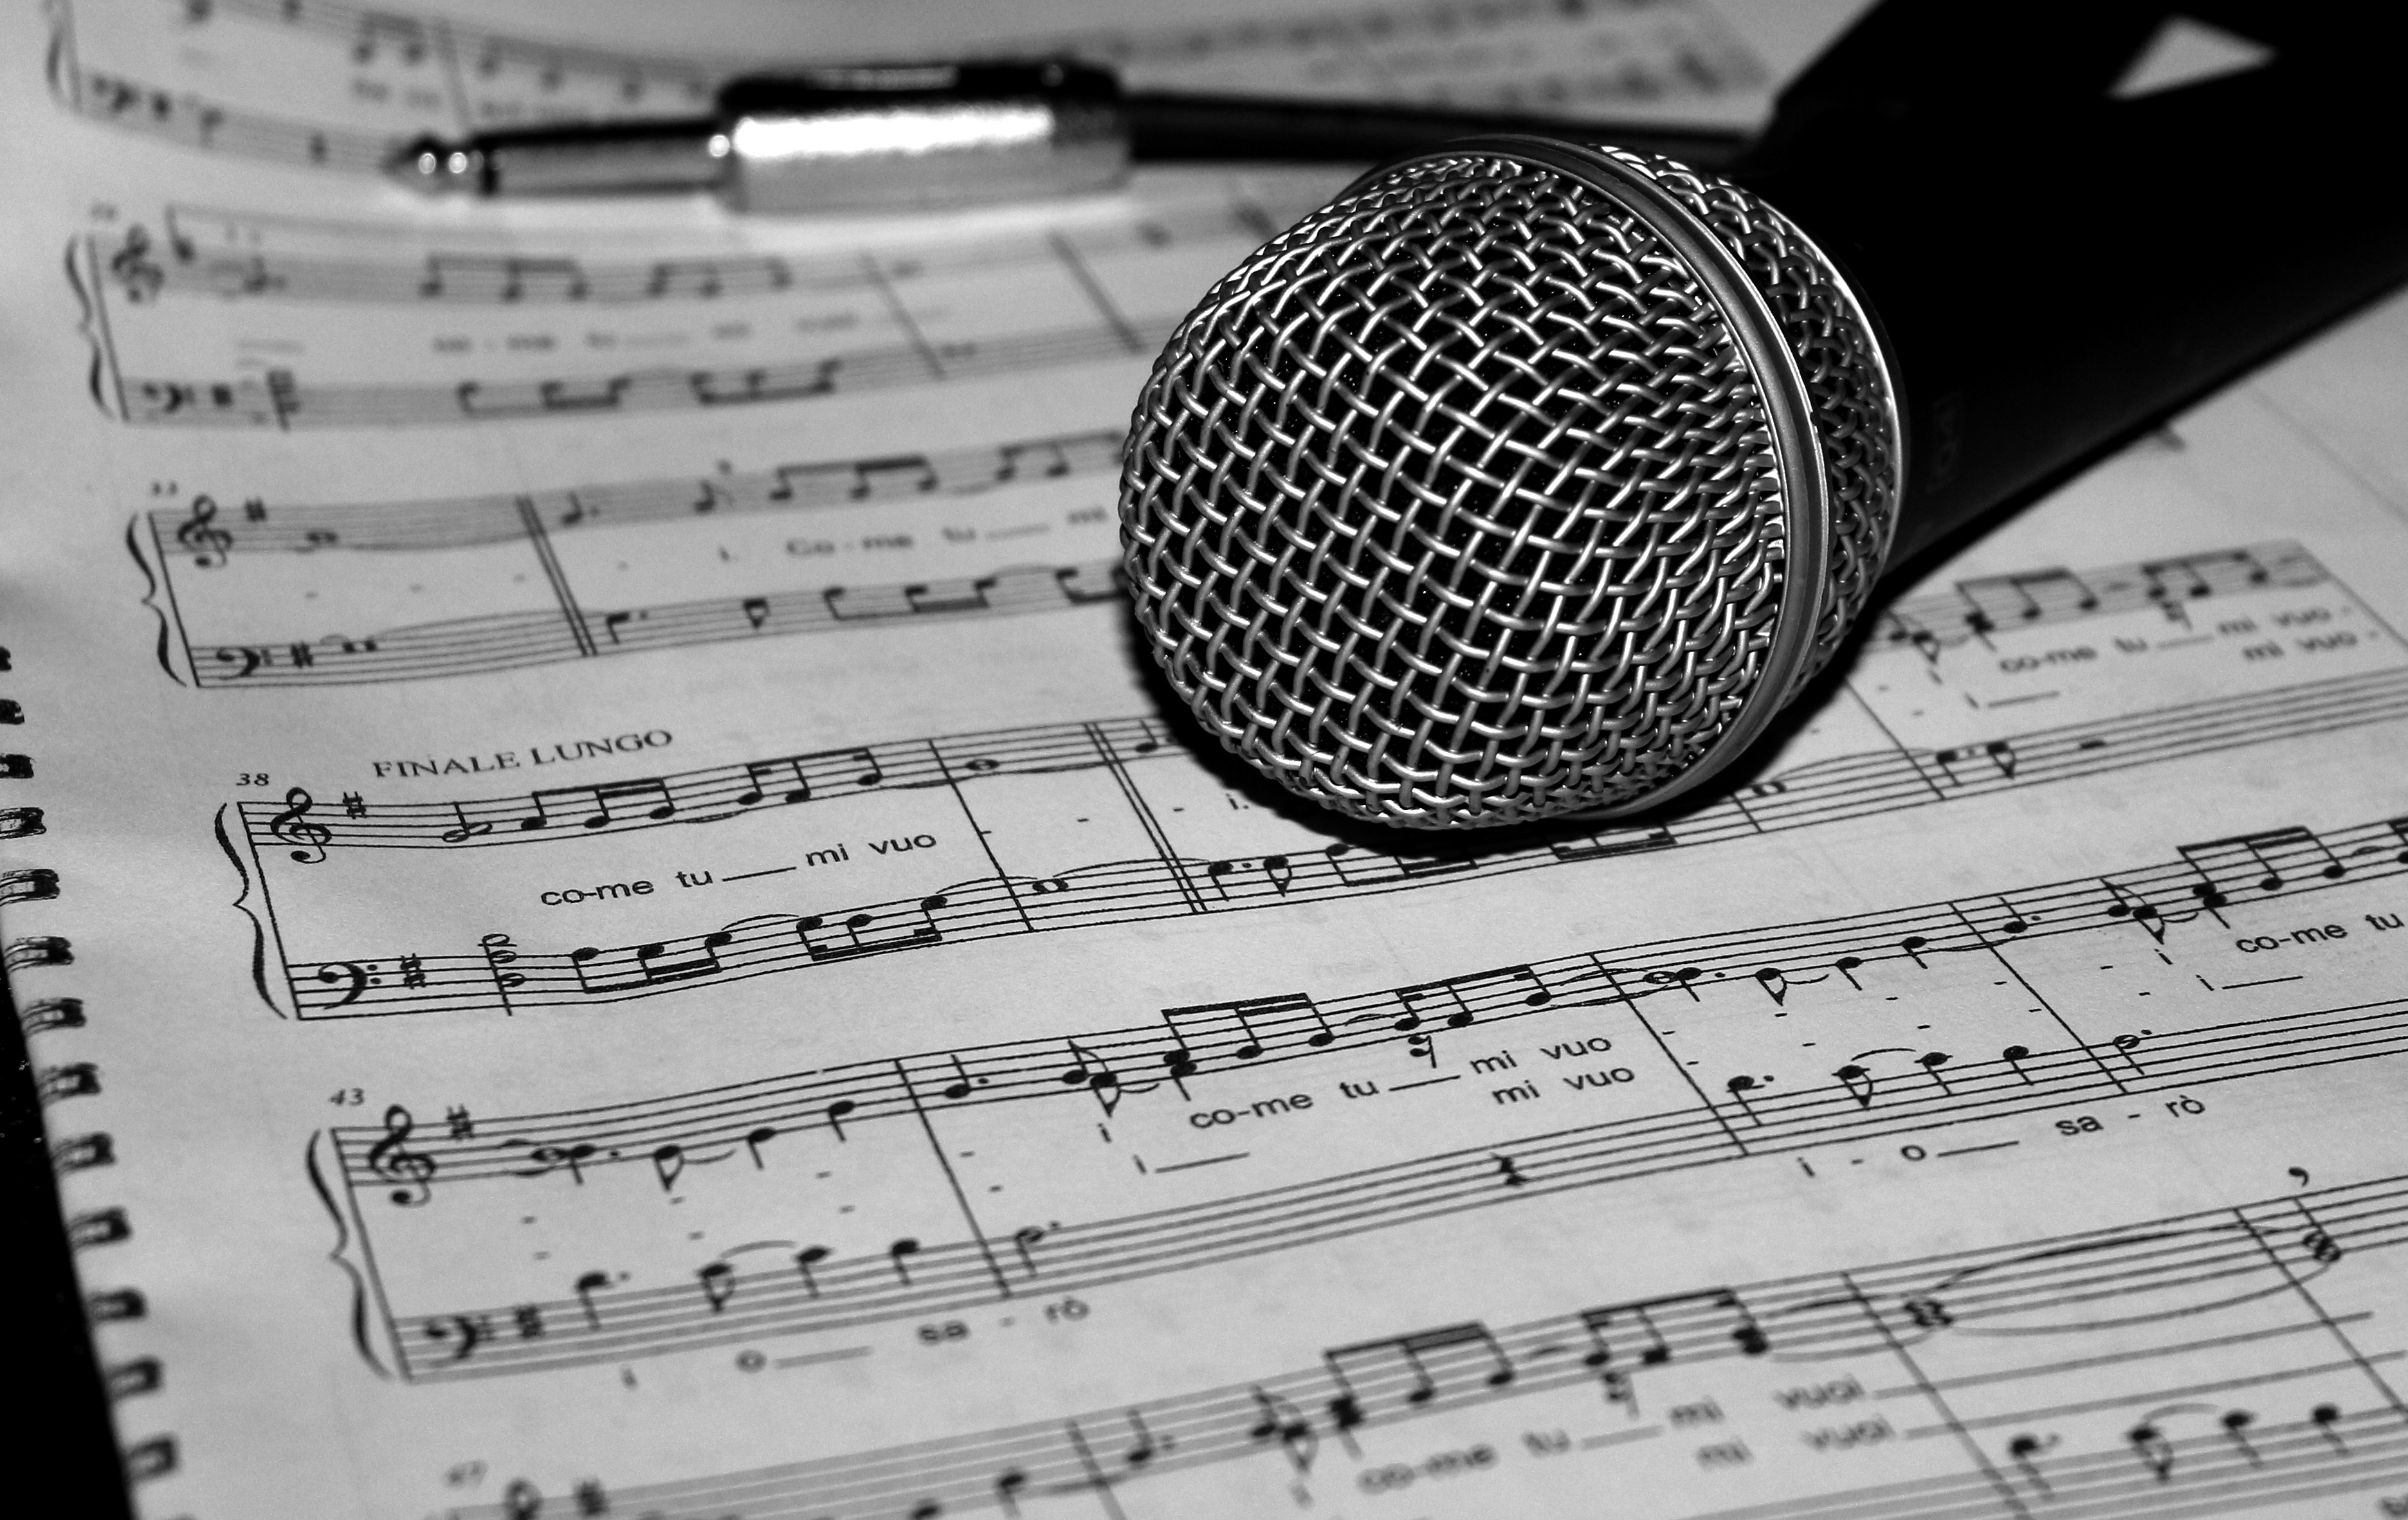 La imagen muestra un micrófono sobre una partitura de una canción